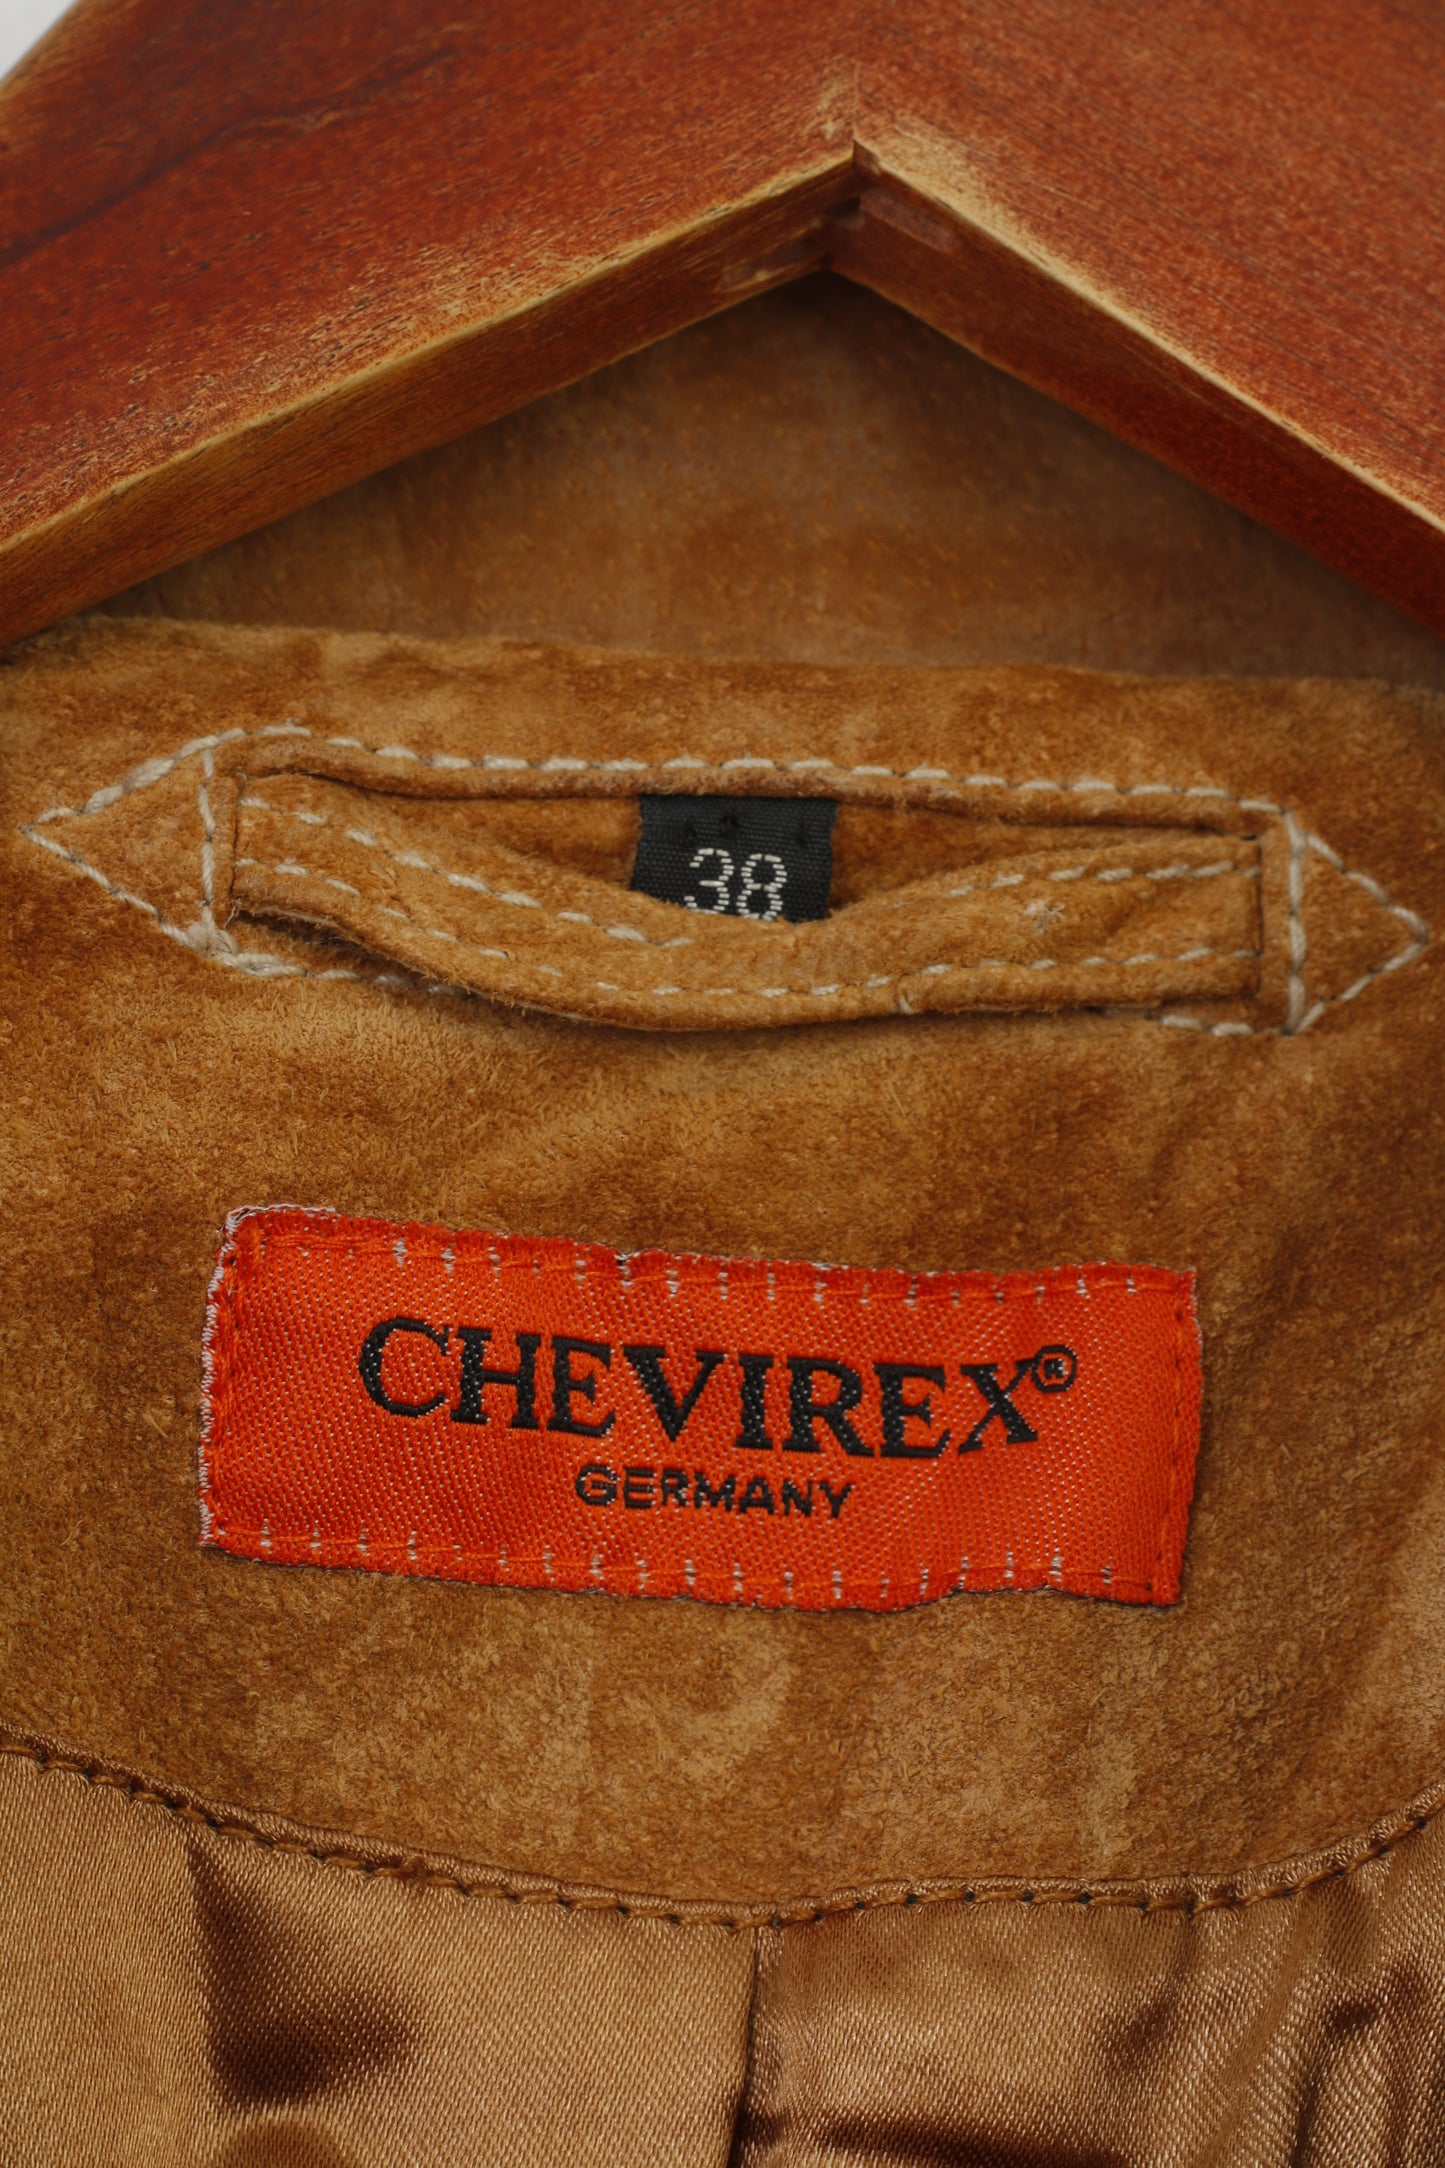 Giacca in pelle Chevirex Germany da donna 38 M. Blazer monopetto vintage in pelle scamosciata marrone